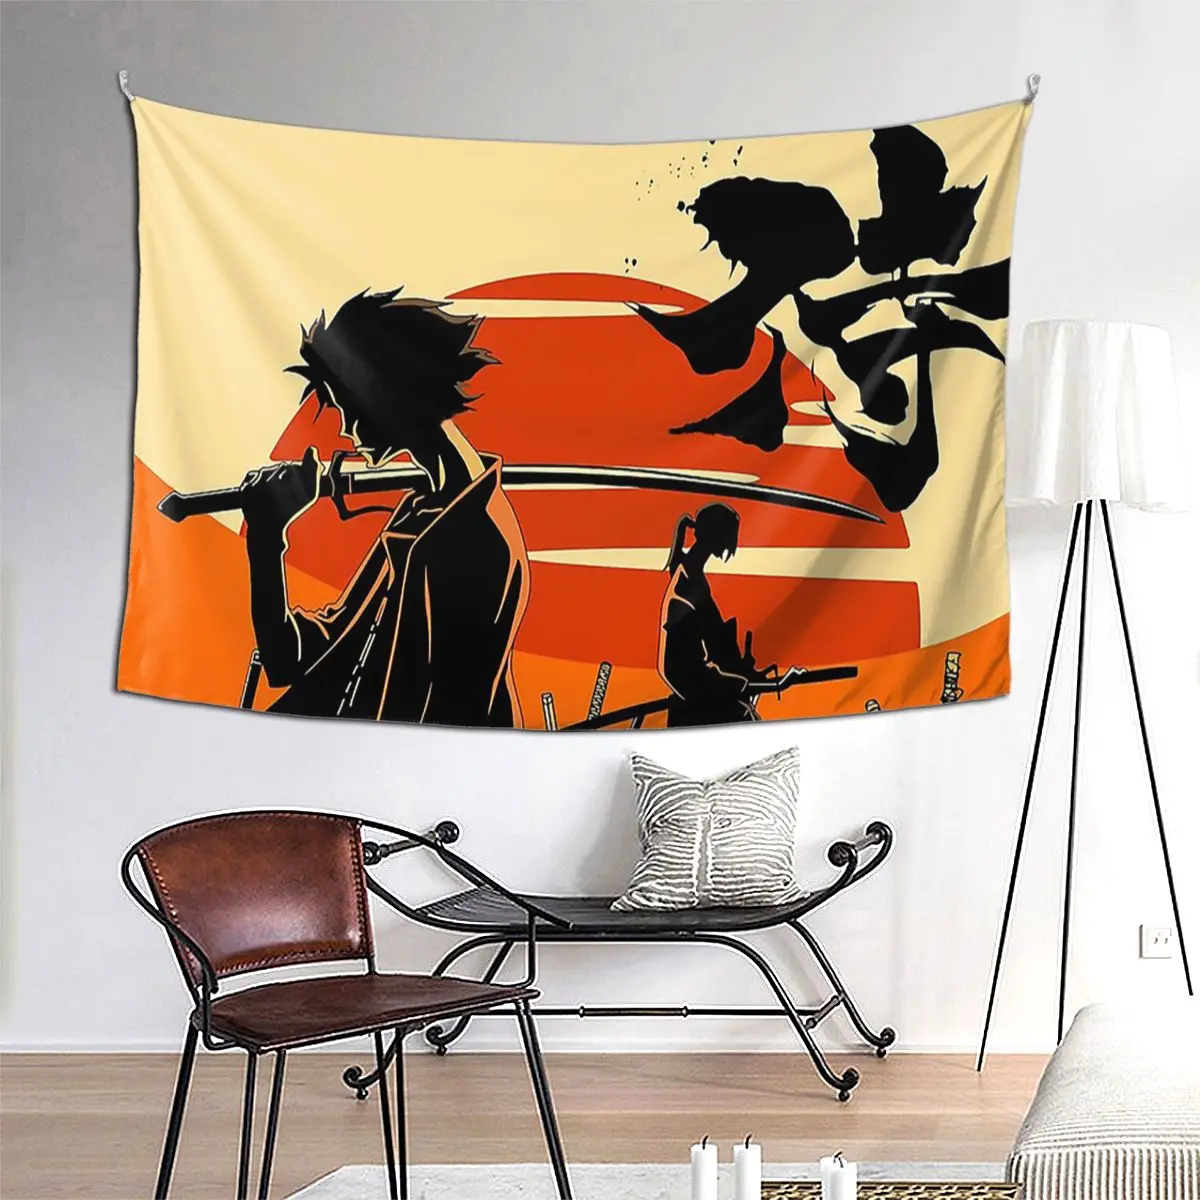 

Sunset Samurai Tapestry Art Wall Hanging Aesthetic Home Decor Tapestries for Living Room Bedroom Dorm Room